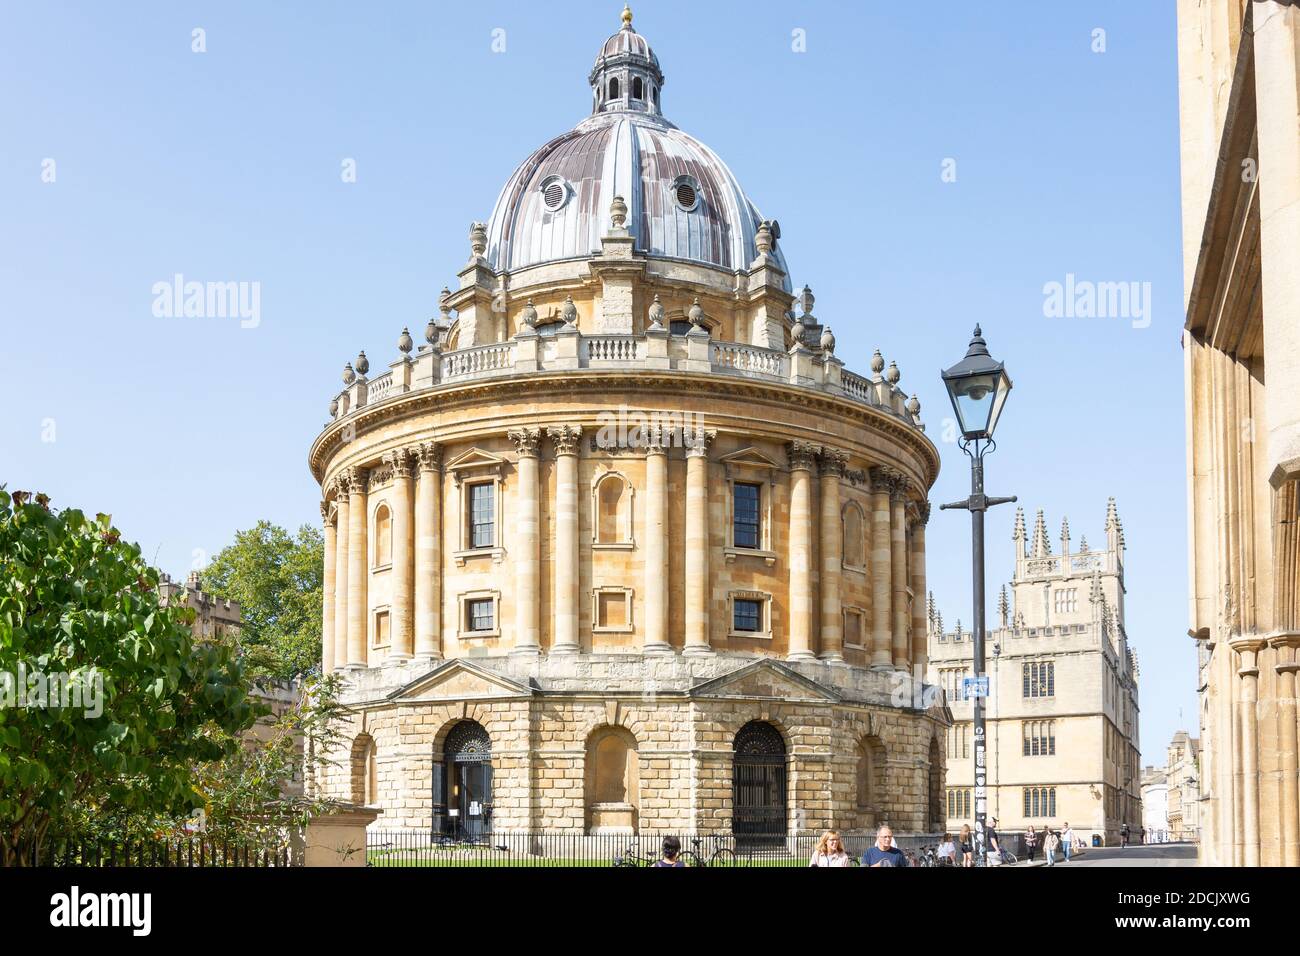 Caméra Radcliife de style palladien de Catte Street, Oxford, Oxfordshire, Angleterre, Royaume-Uni Banque D'Images